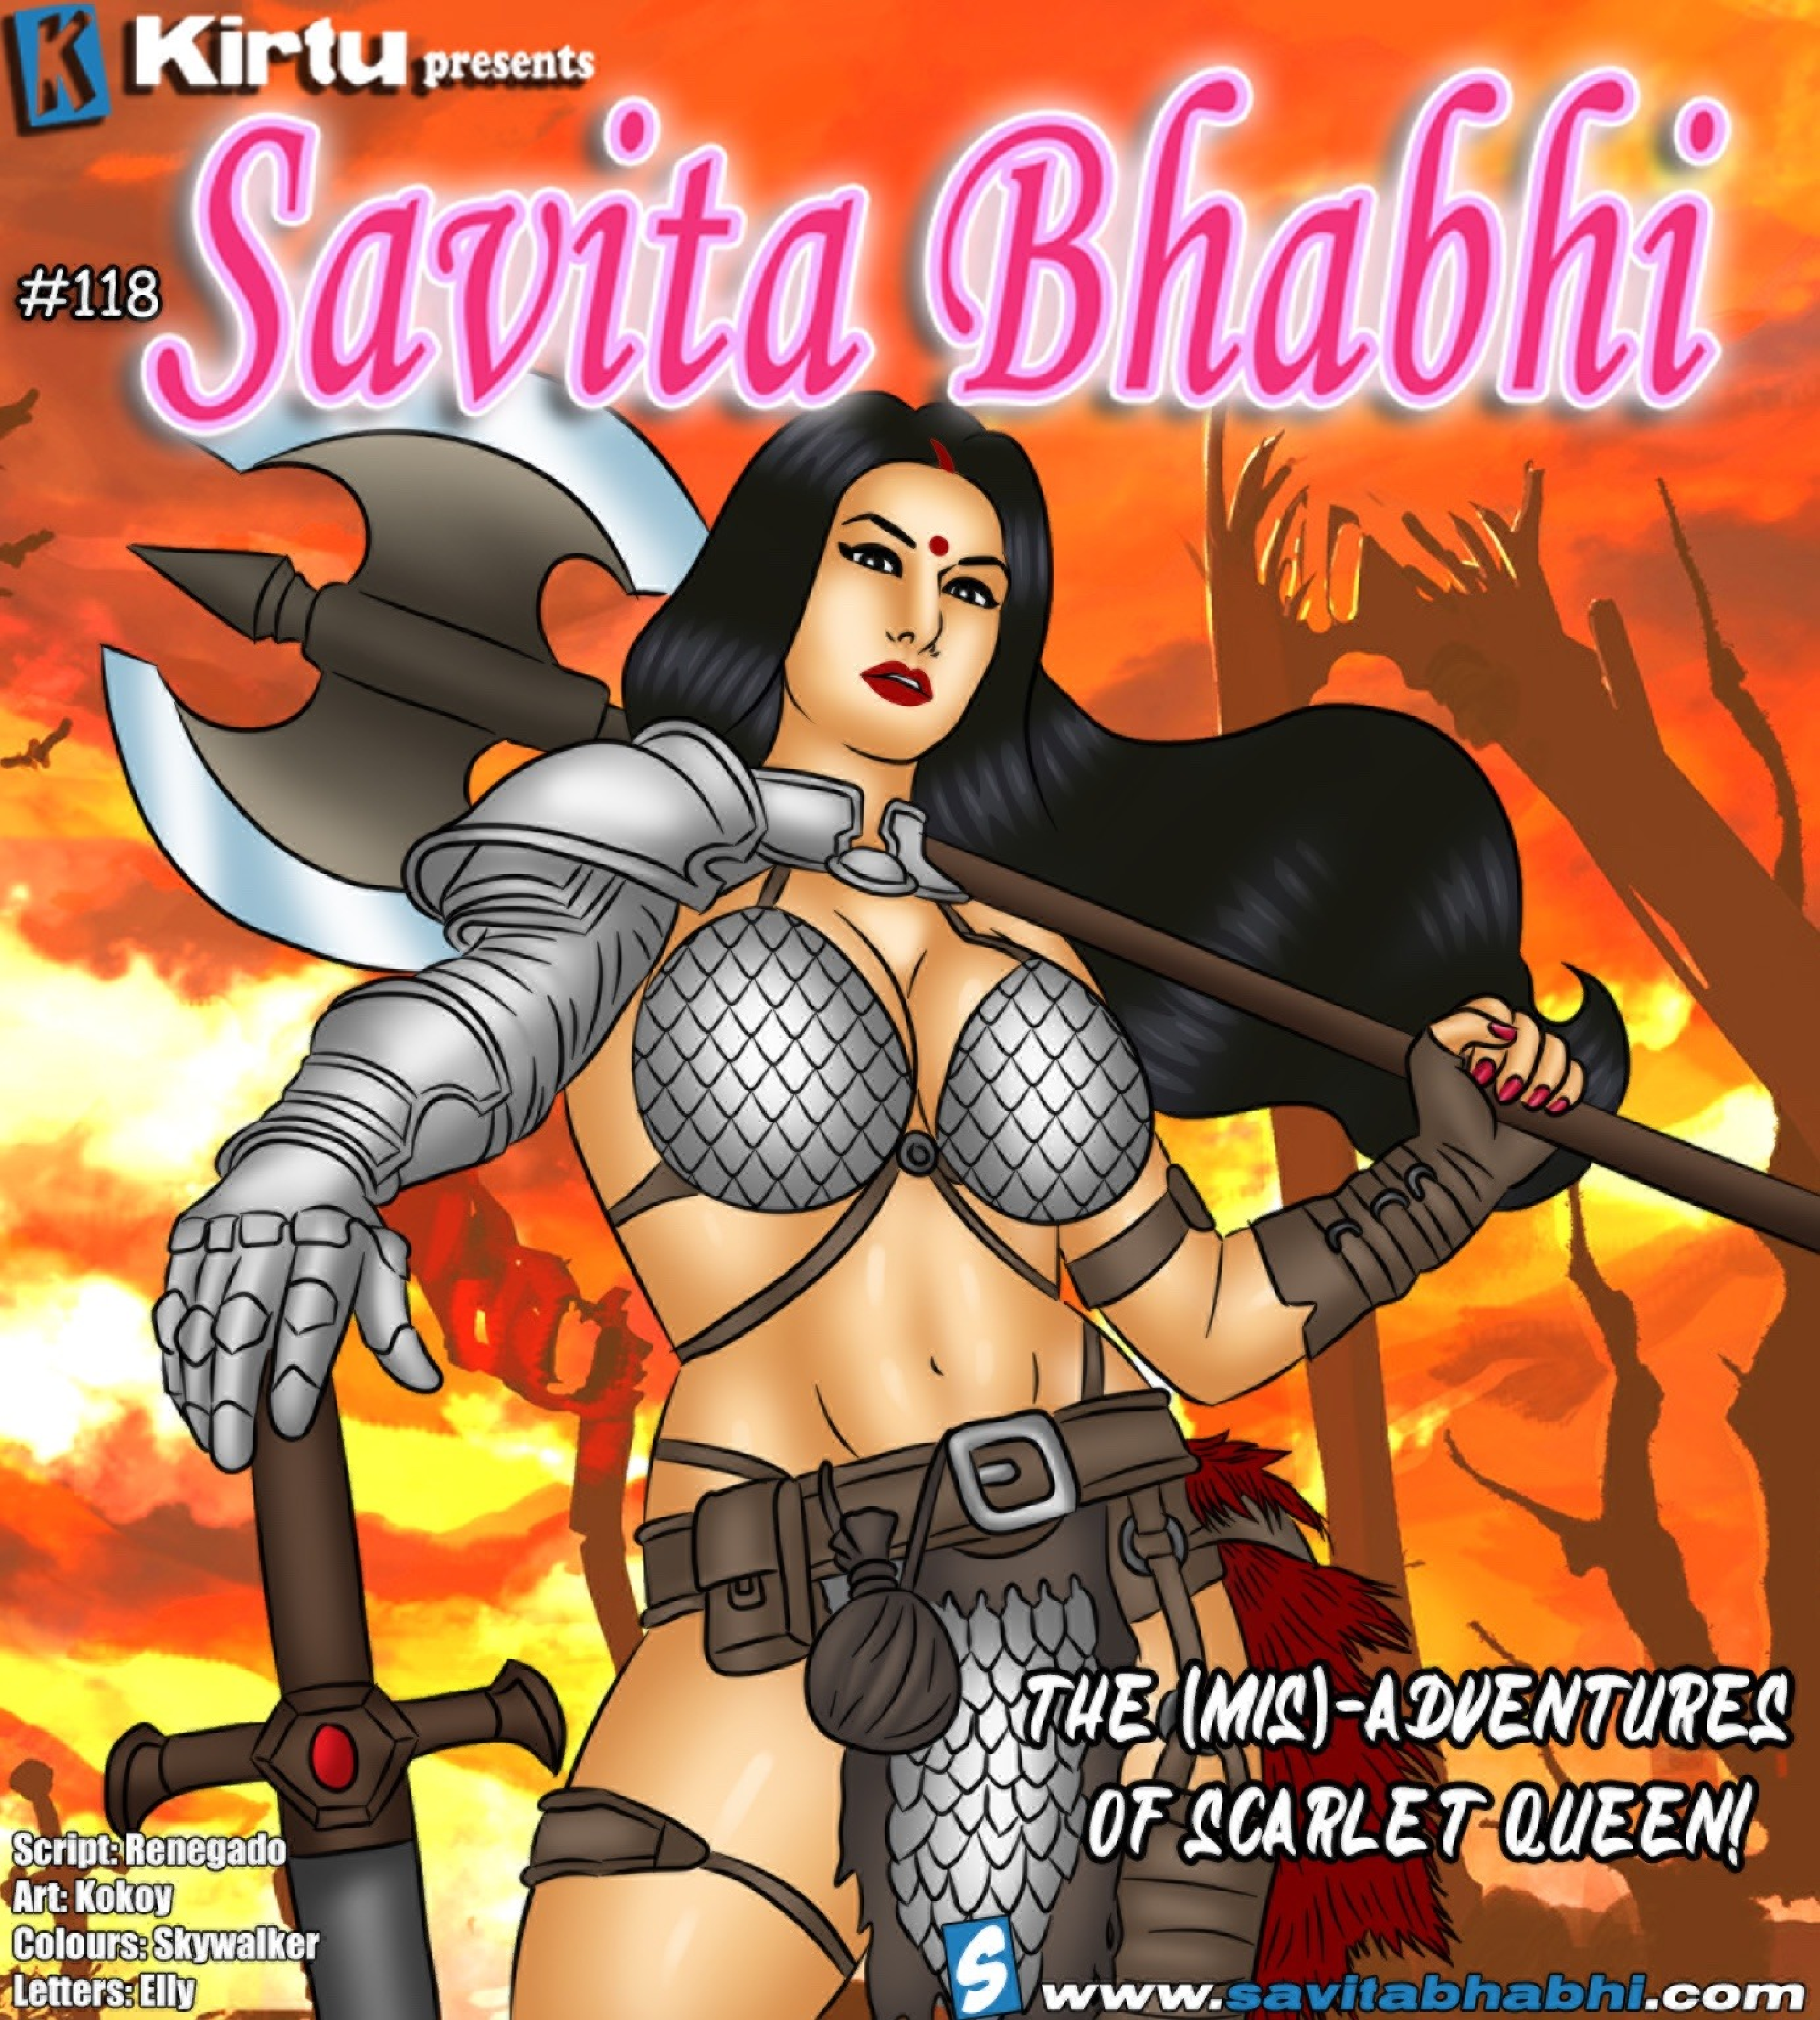 bessie gibson recommends savita bhabhi all episodes pic